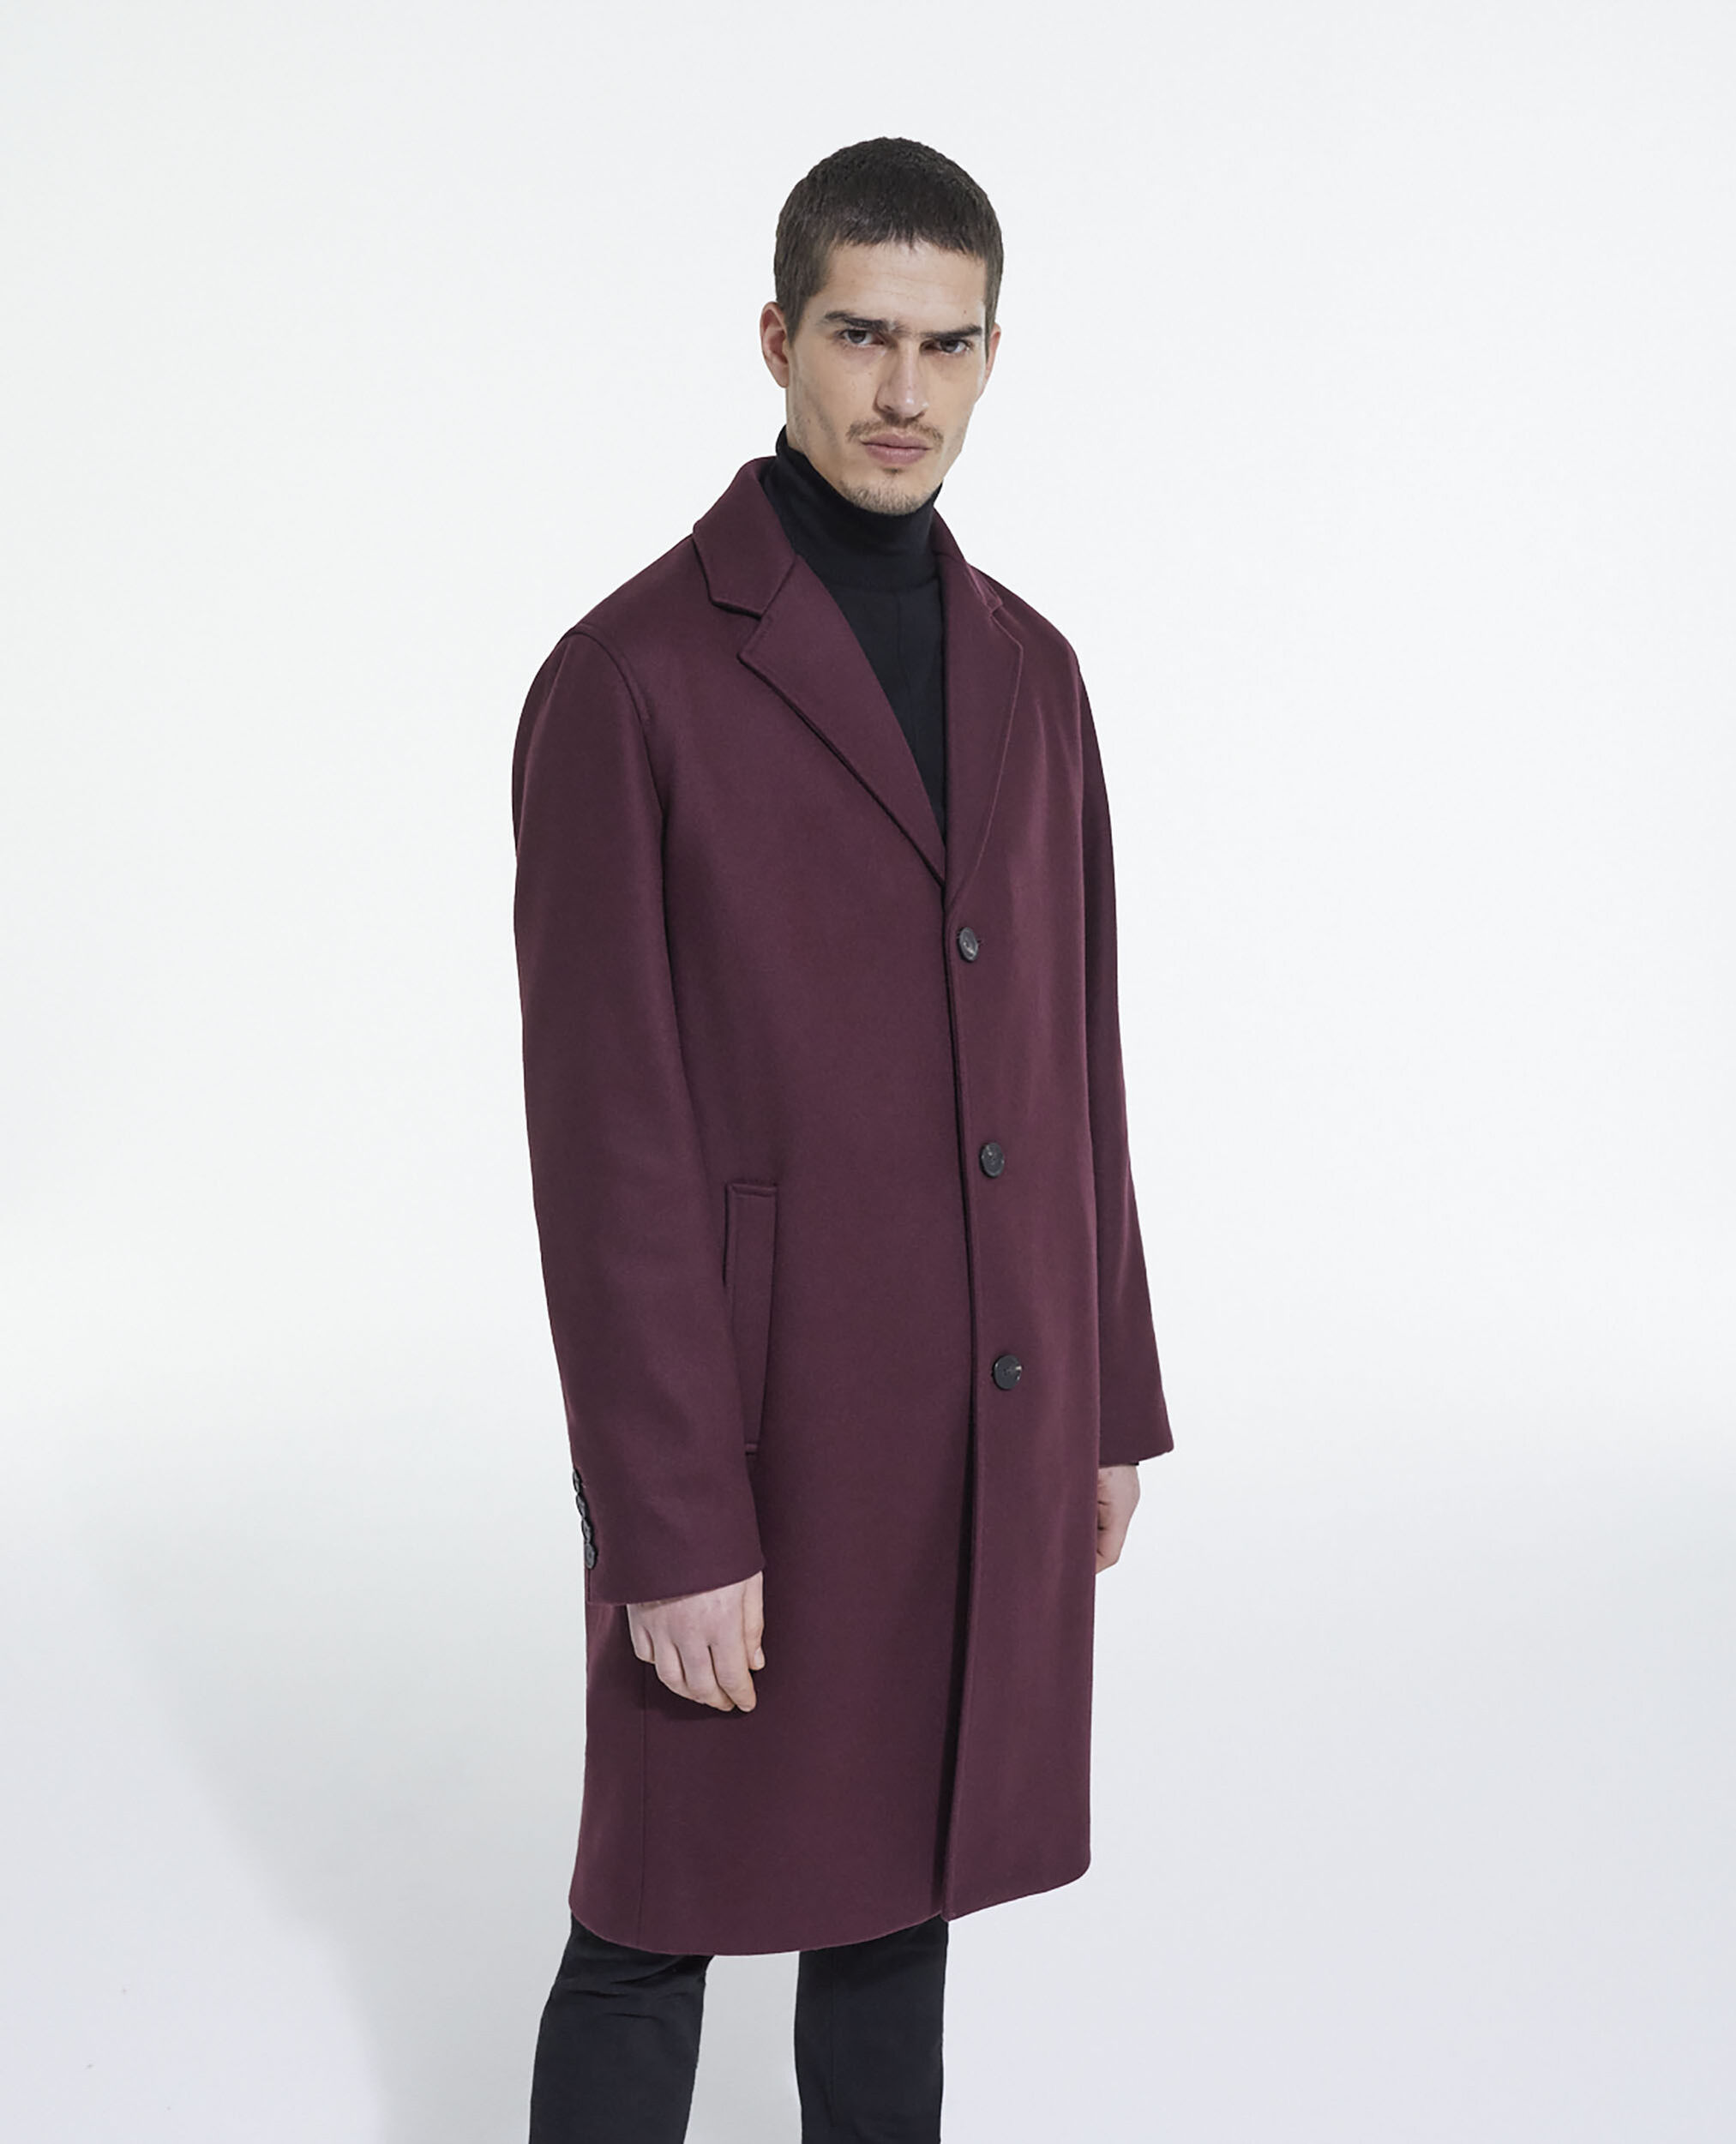 Burgundy wool coat | The Kooples